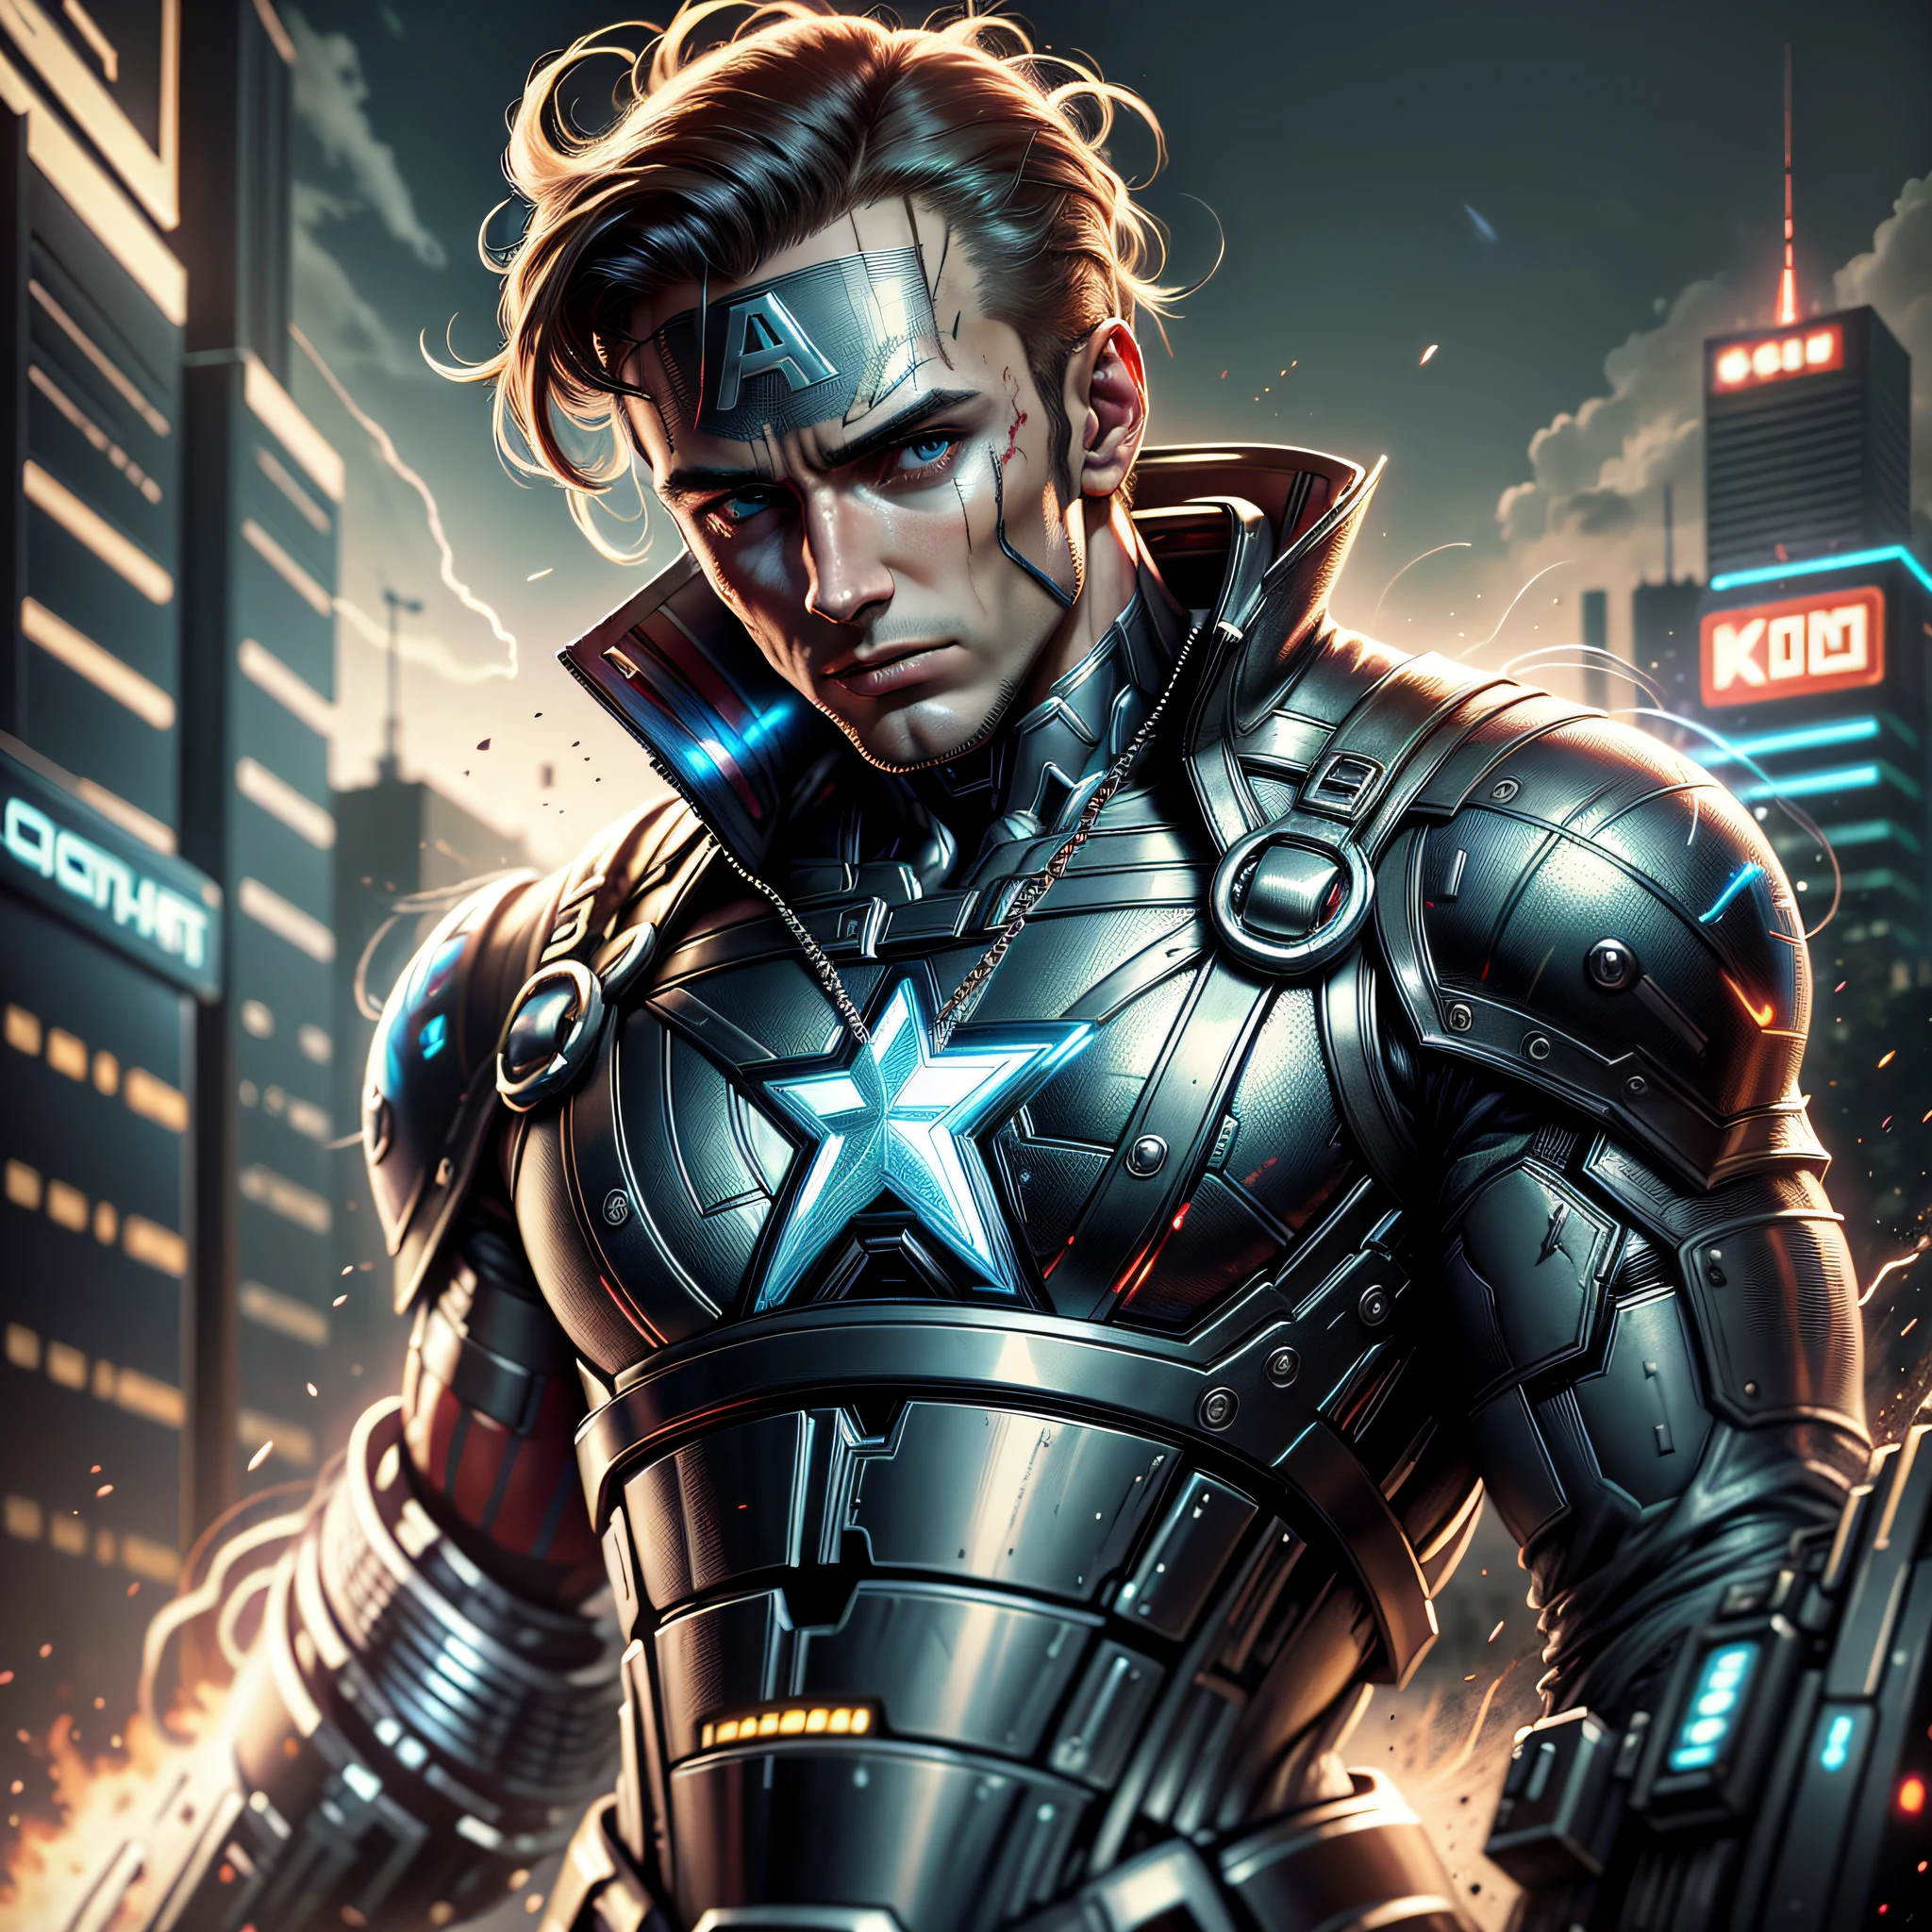 Капитан Америка DC Comics Футуристический кибер-панк стиль (шедевр) (Лучшее качество) (подробный) (8К) (HDR) (обои) (кинематографическое освещение) (острый фокус) (сложный) --auto --s2